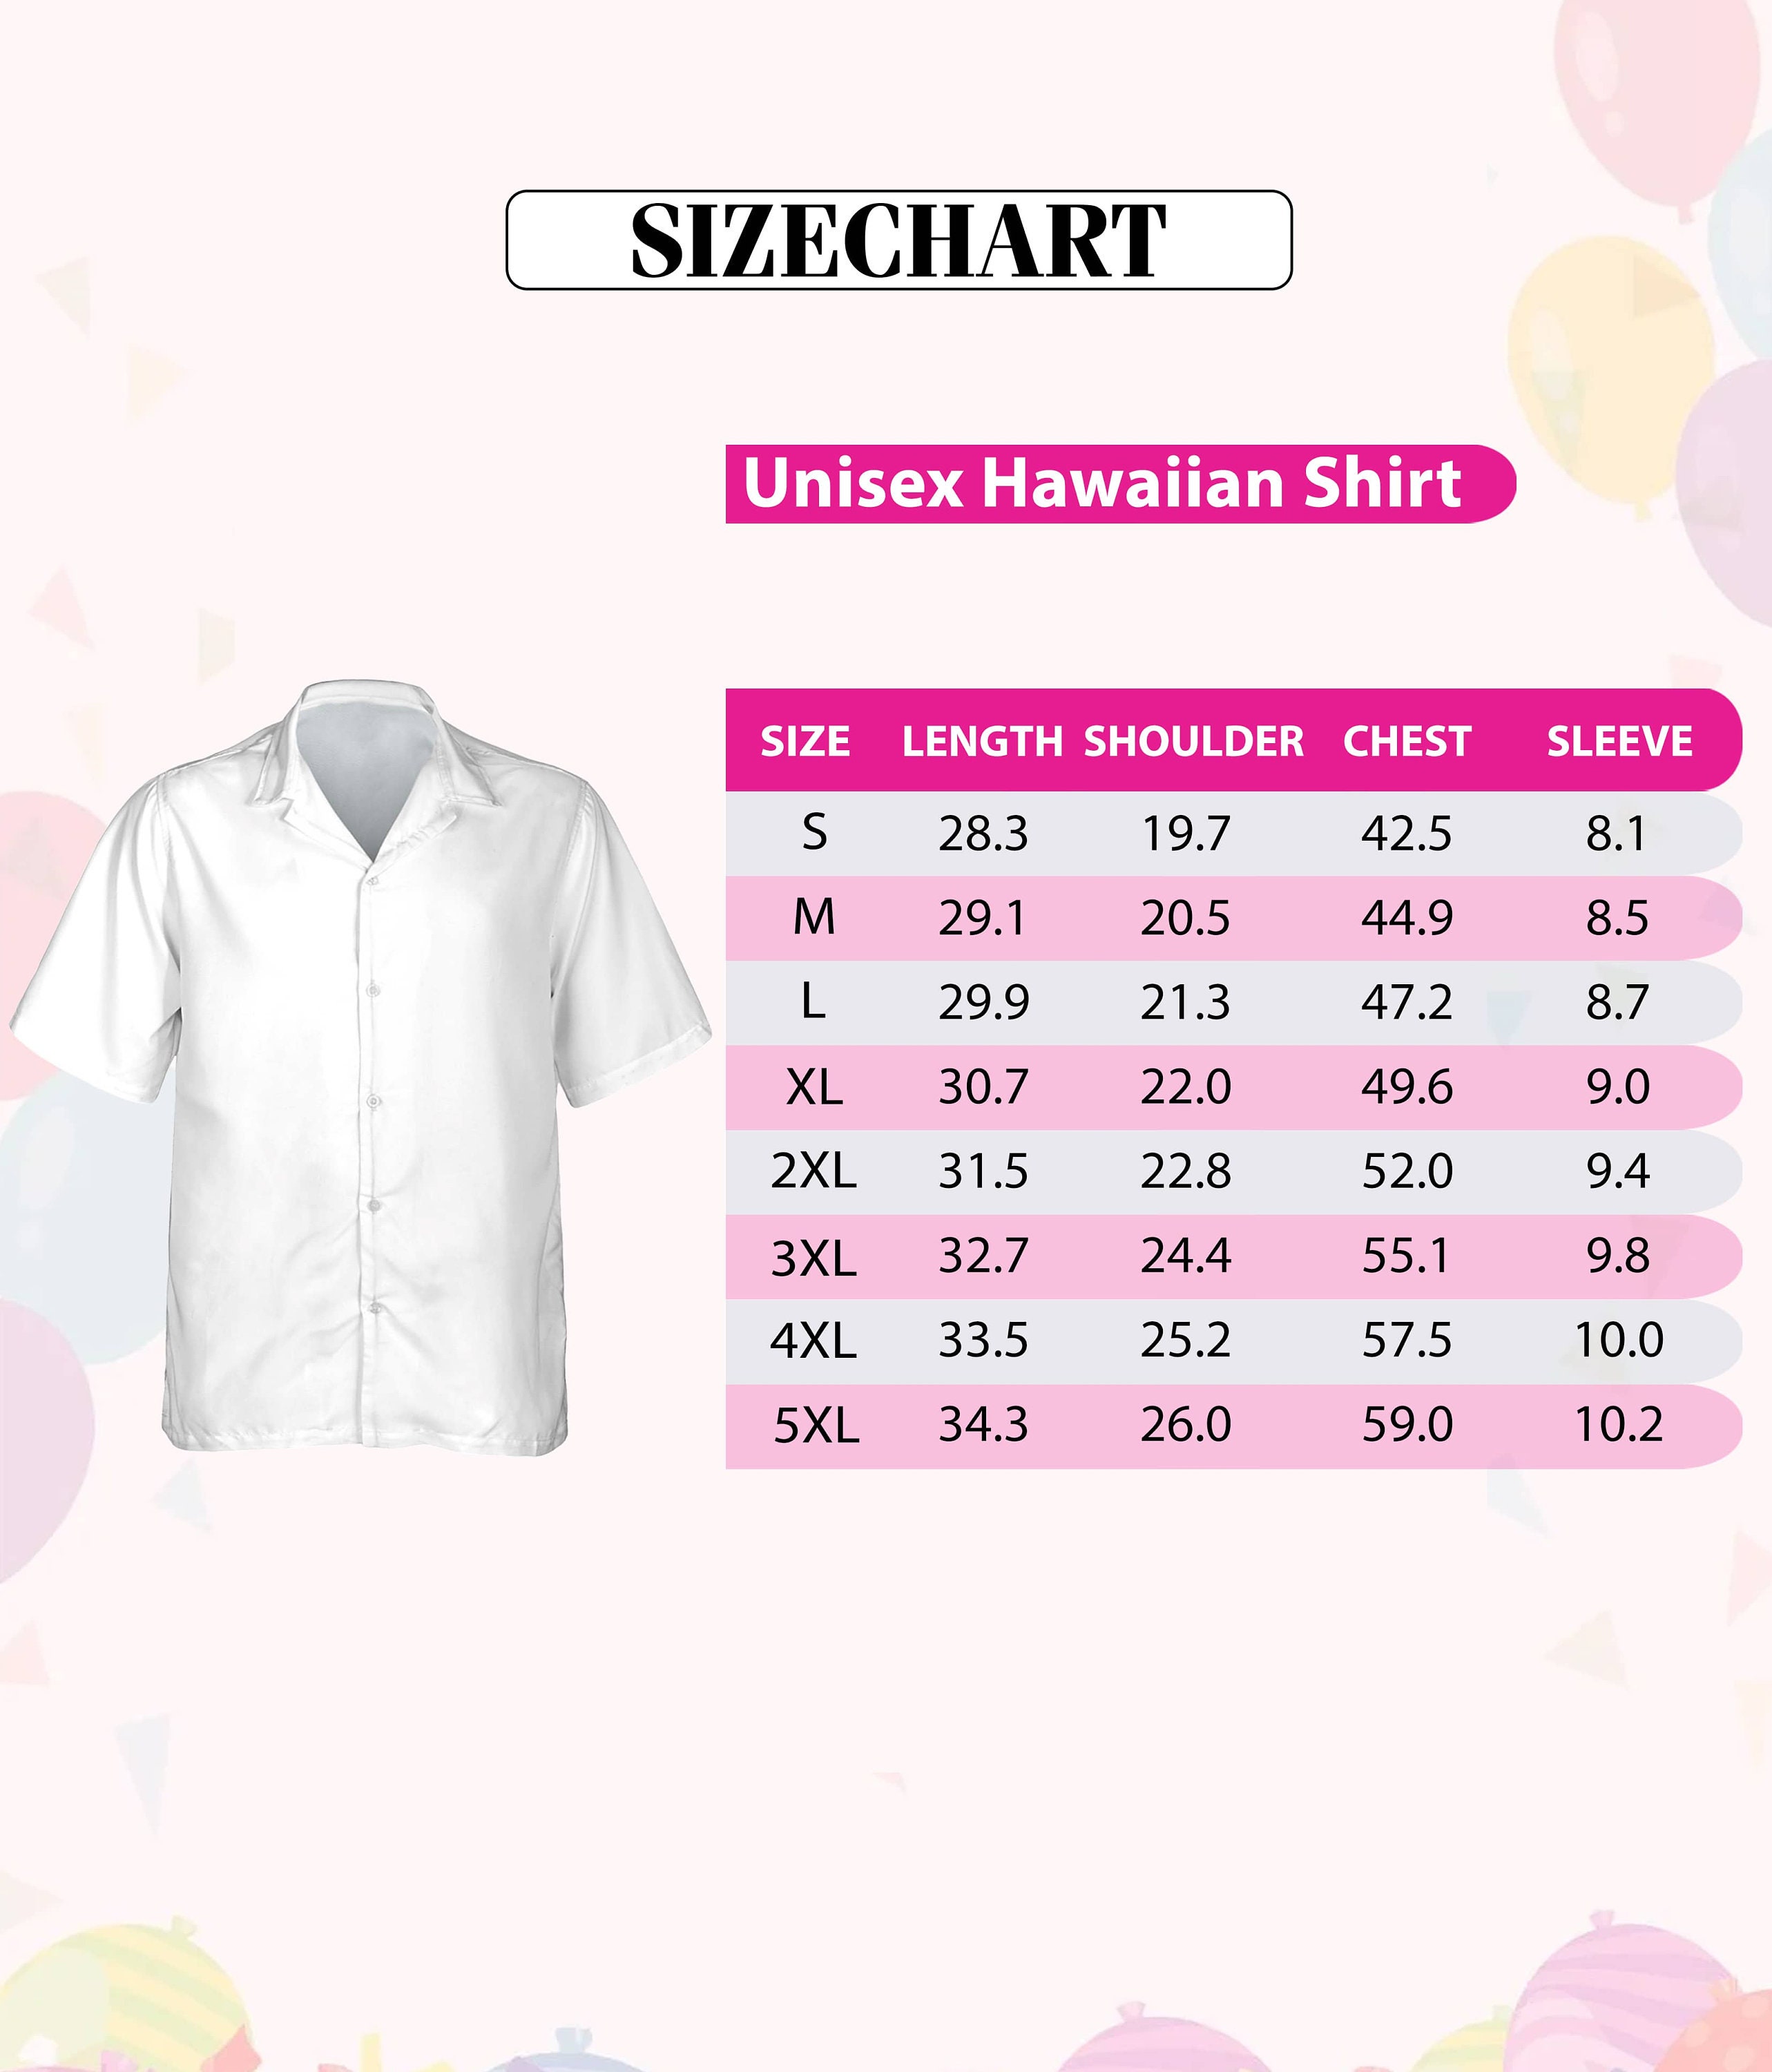 Pig Ocean Summer Hawaii Shirt, Pig Button Up Shirt Holiday, Bear Movie Hawaiian Shirt, Funny Shirt Gift, Cute Pig 3D All Over Print Shirt